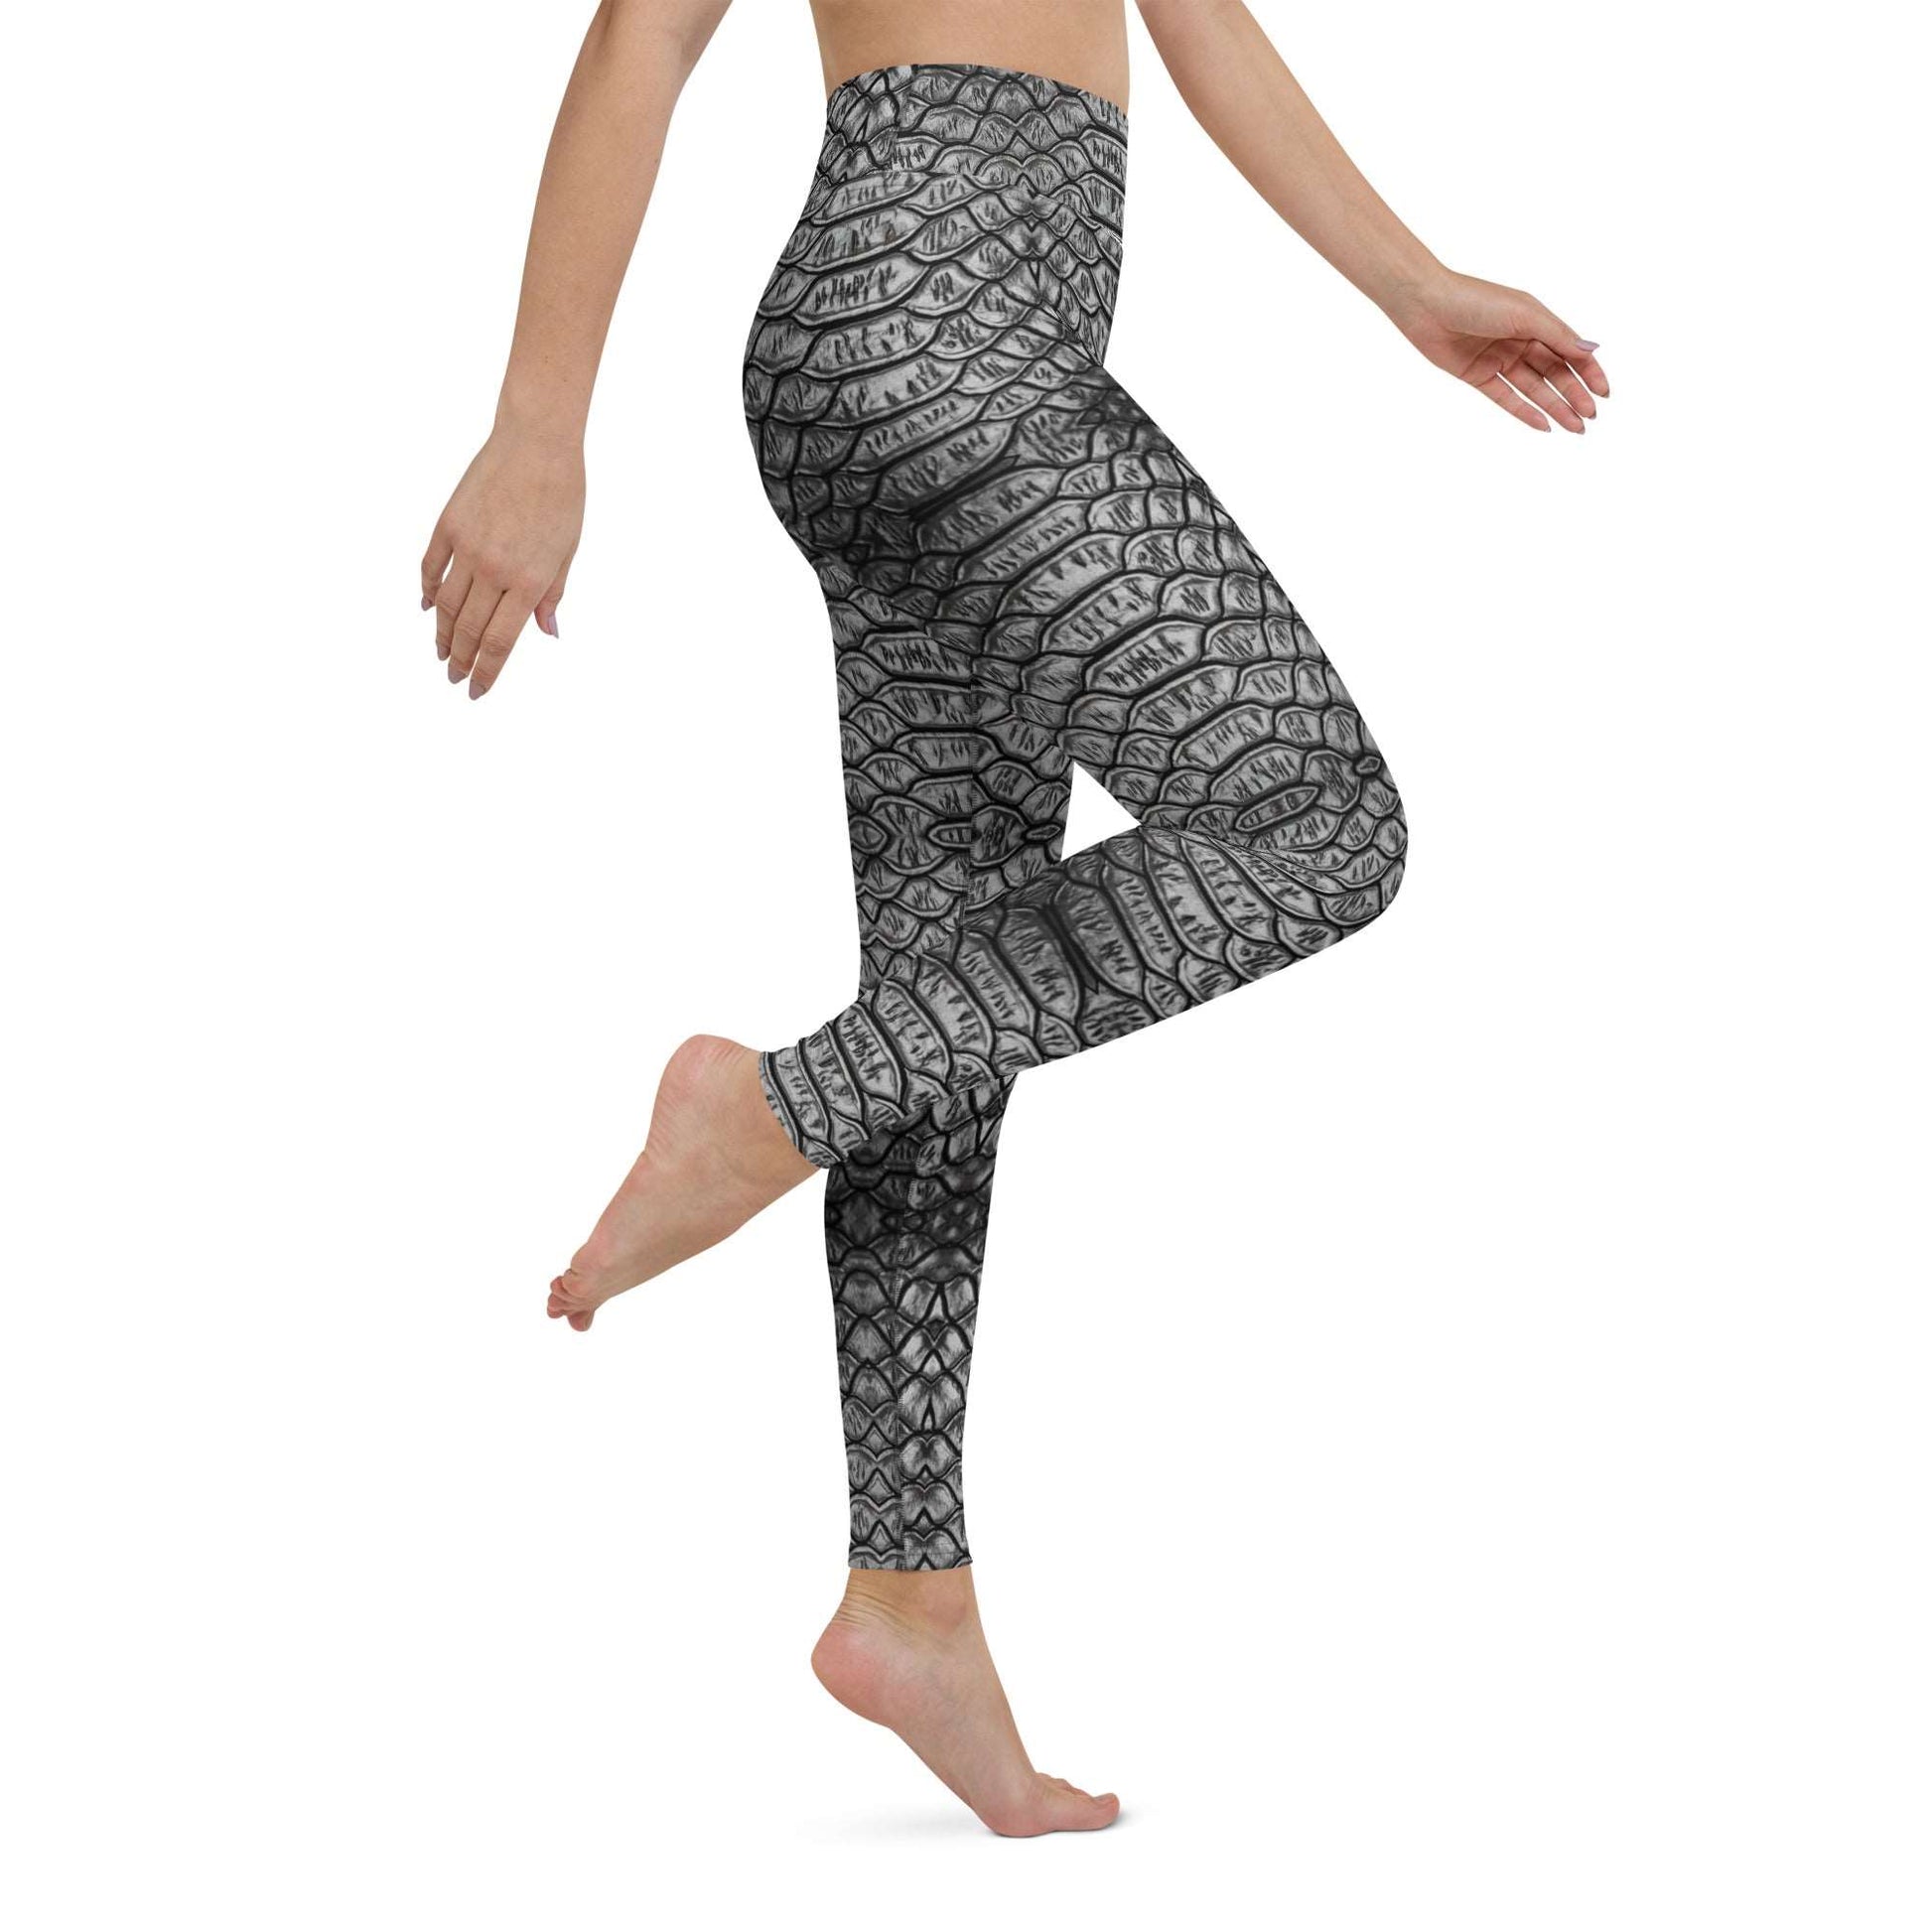 Eclipse Serpent Yoga Leggings - Gothic Leggings, Snake skin leggings, date night leggings